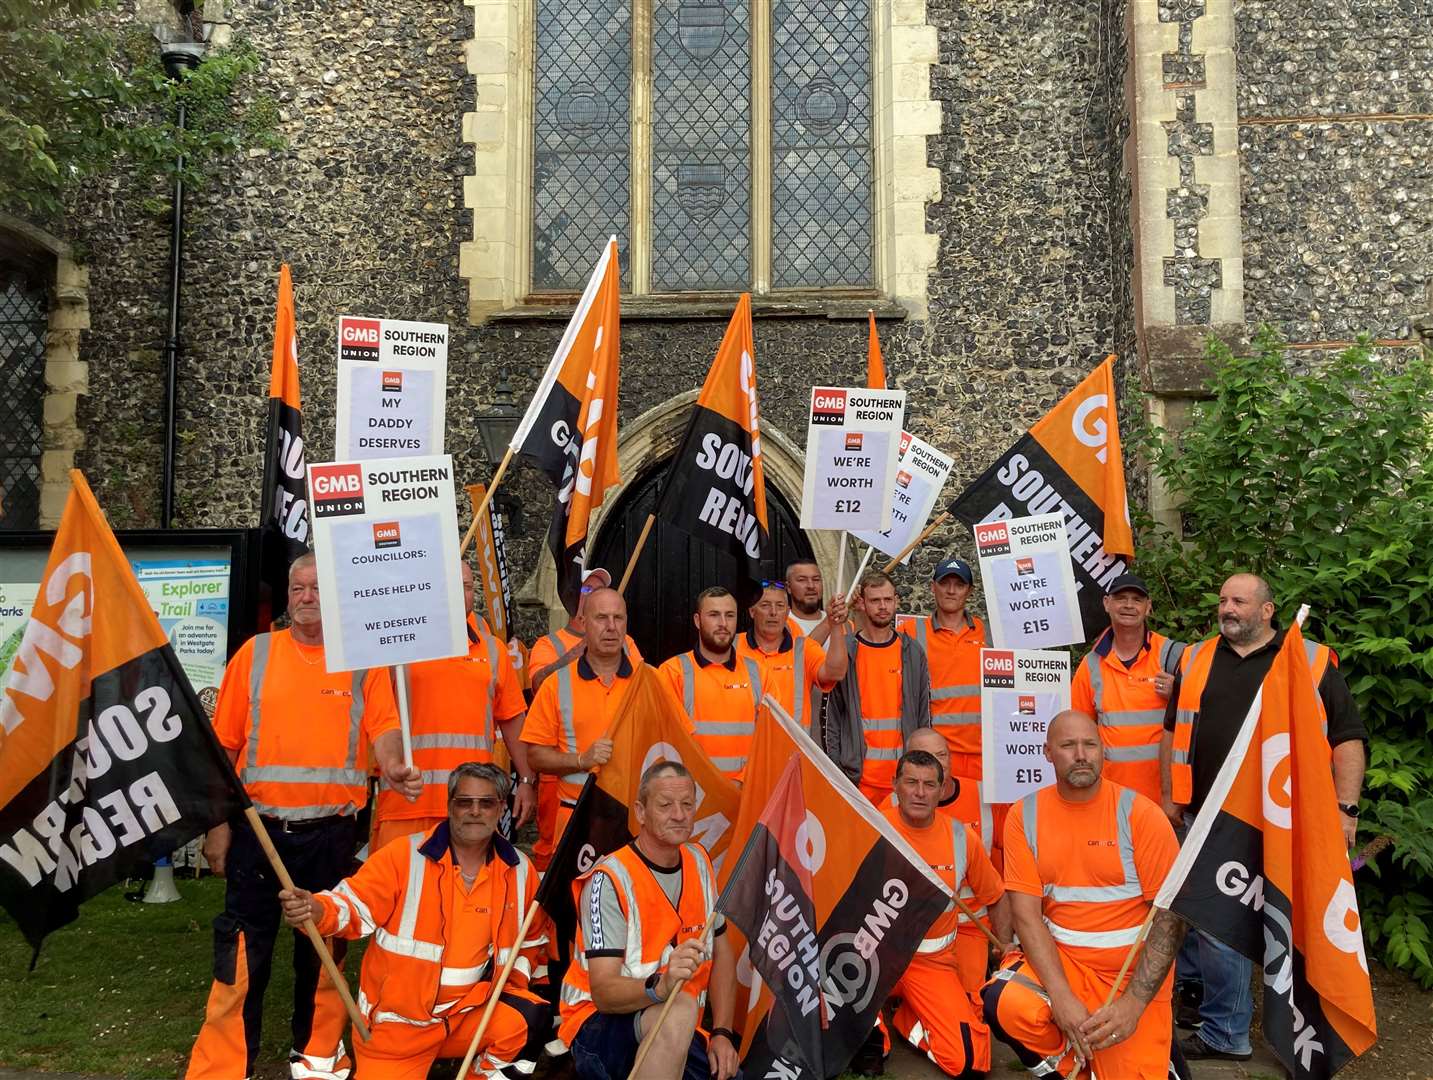 Canterbury bin strikers are in their third week of industrial action